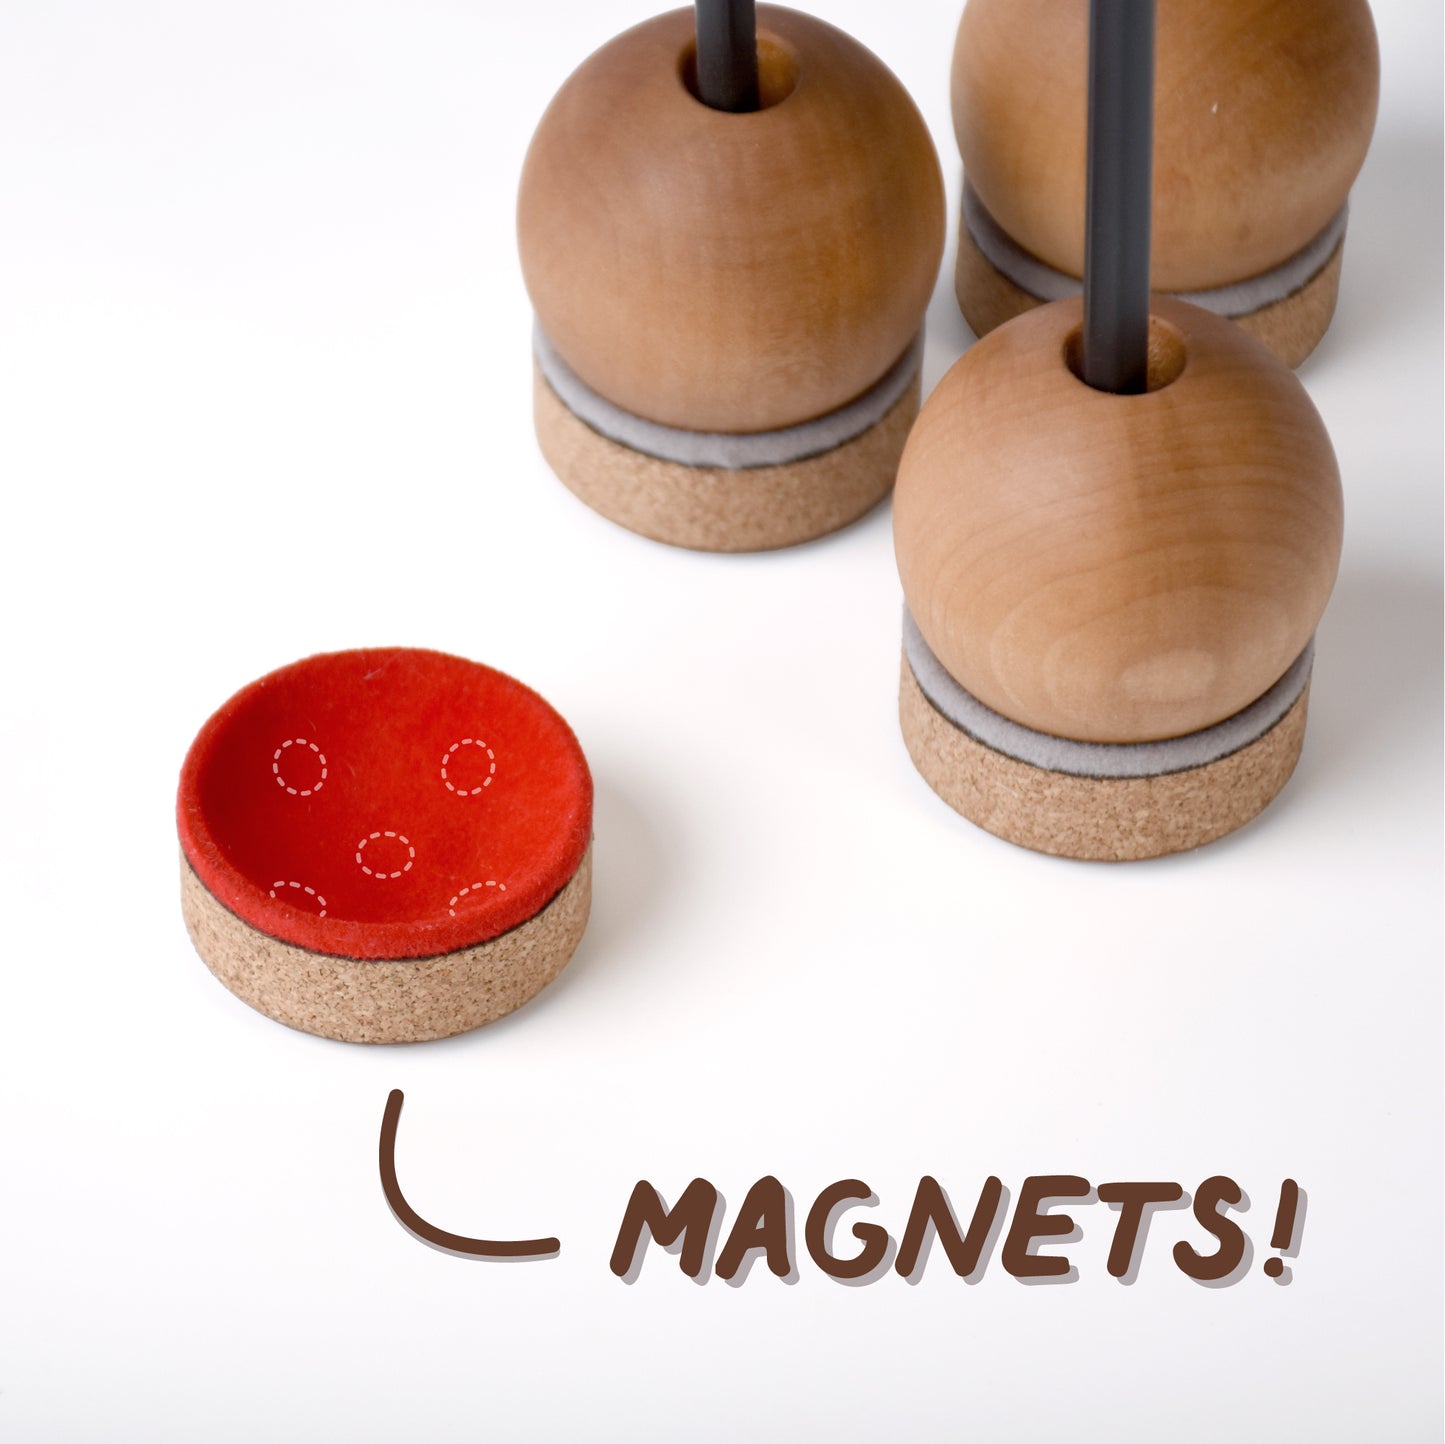 Magnetic Pencil Holder